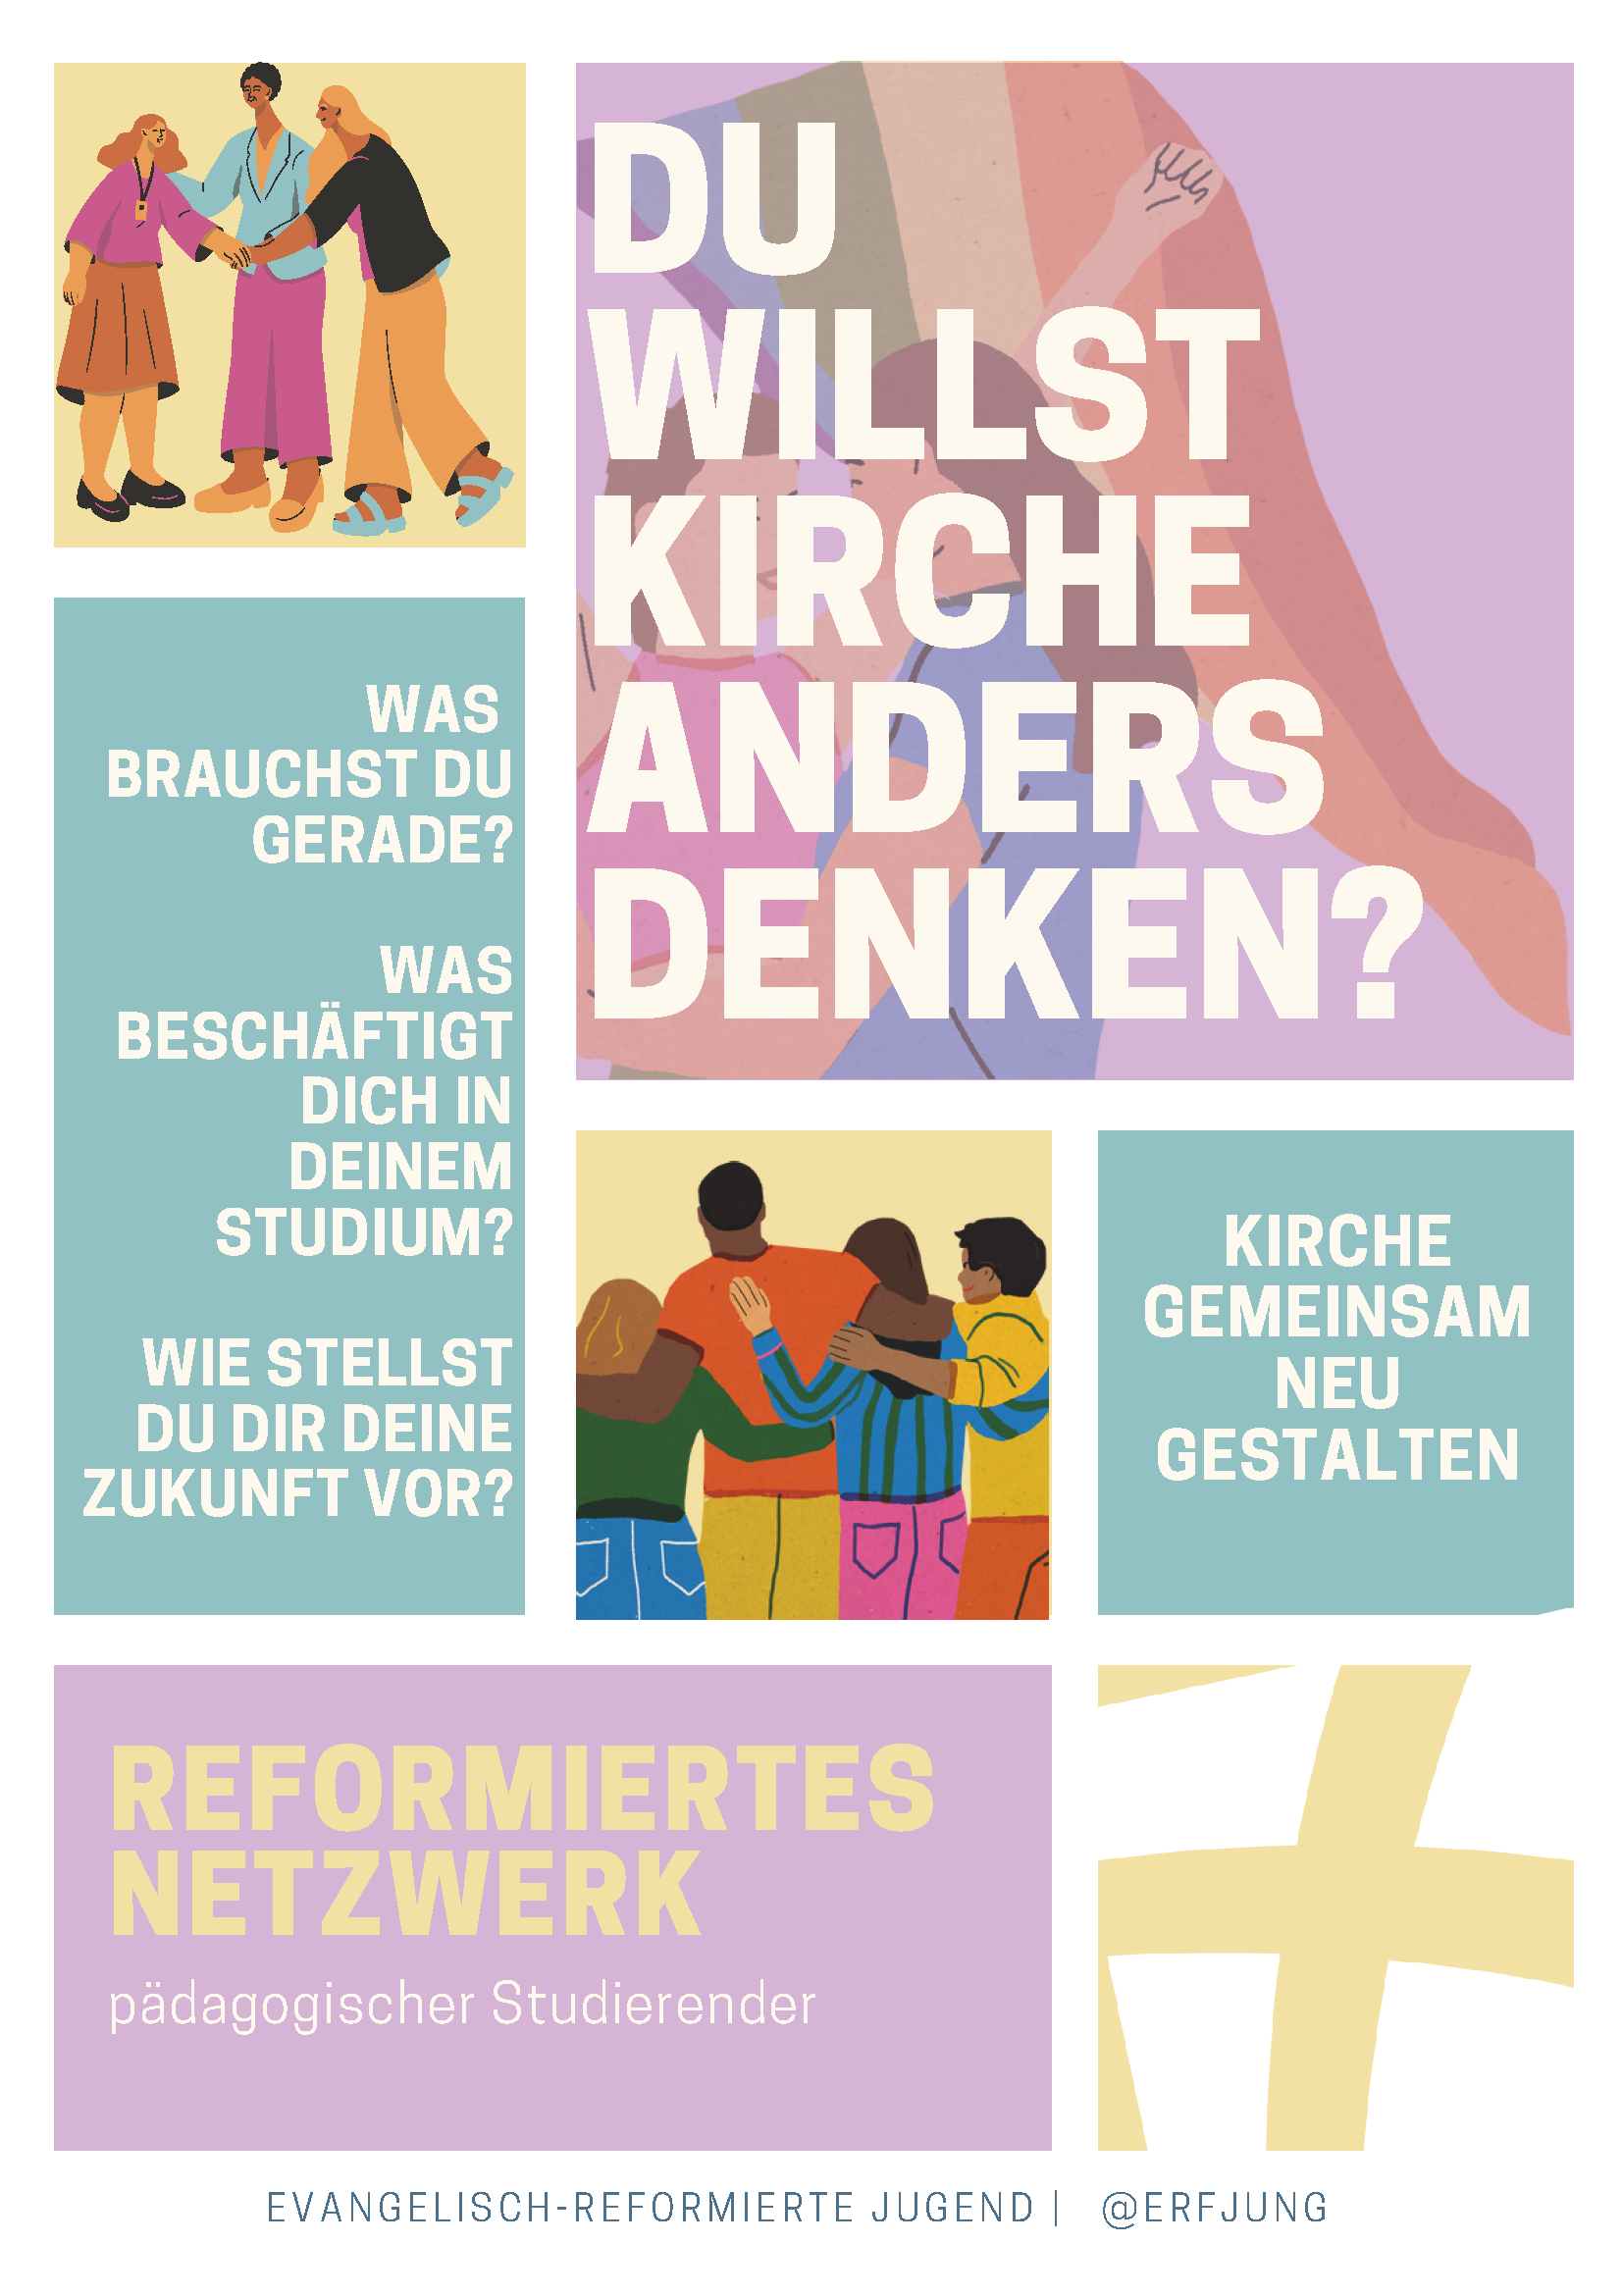 Featured image for “Reformiertes Netzwerk pädagogischer Studierender”